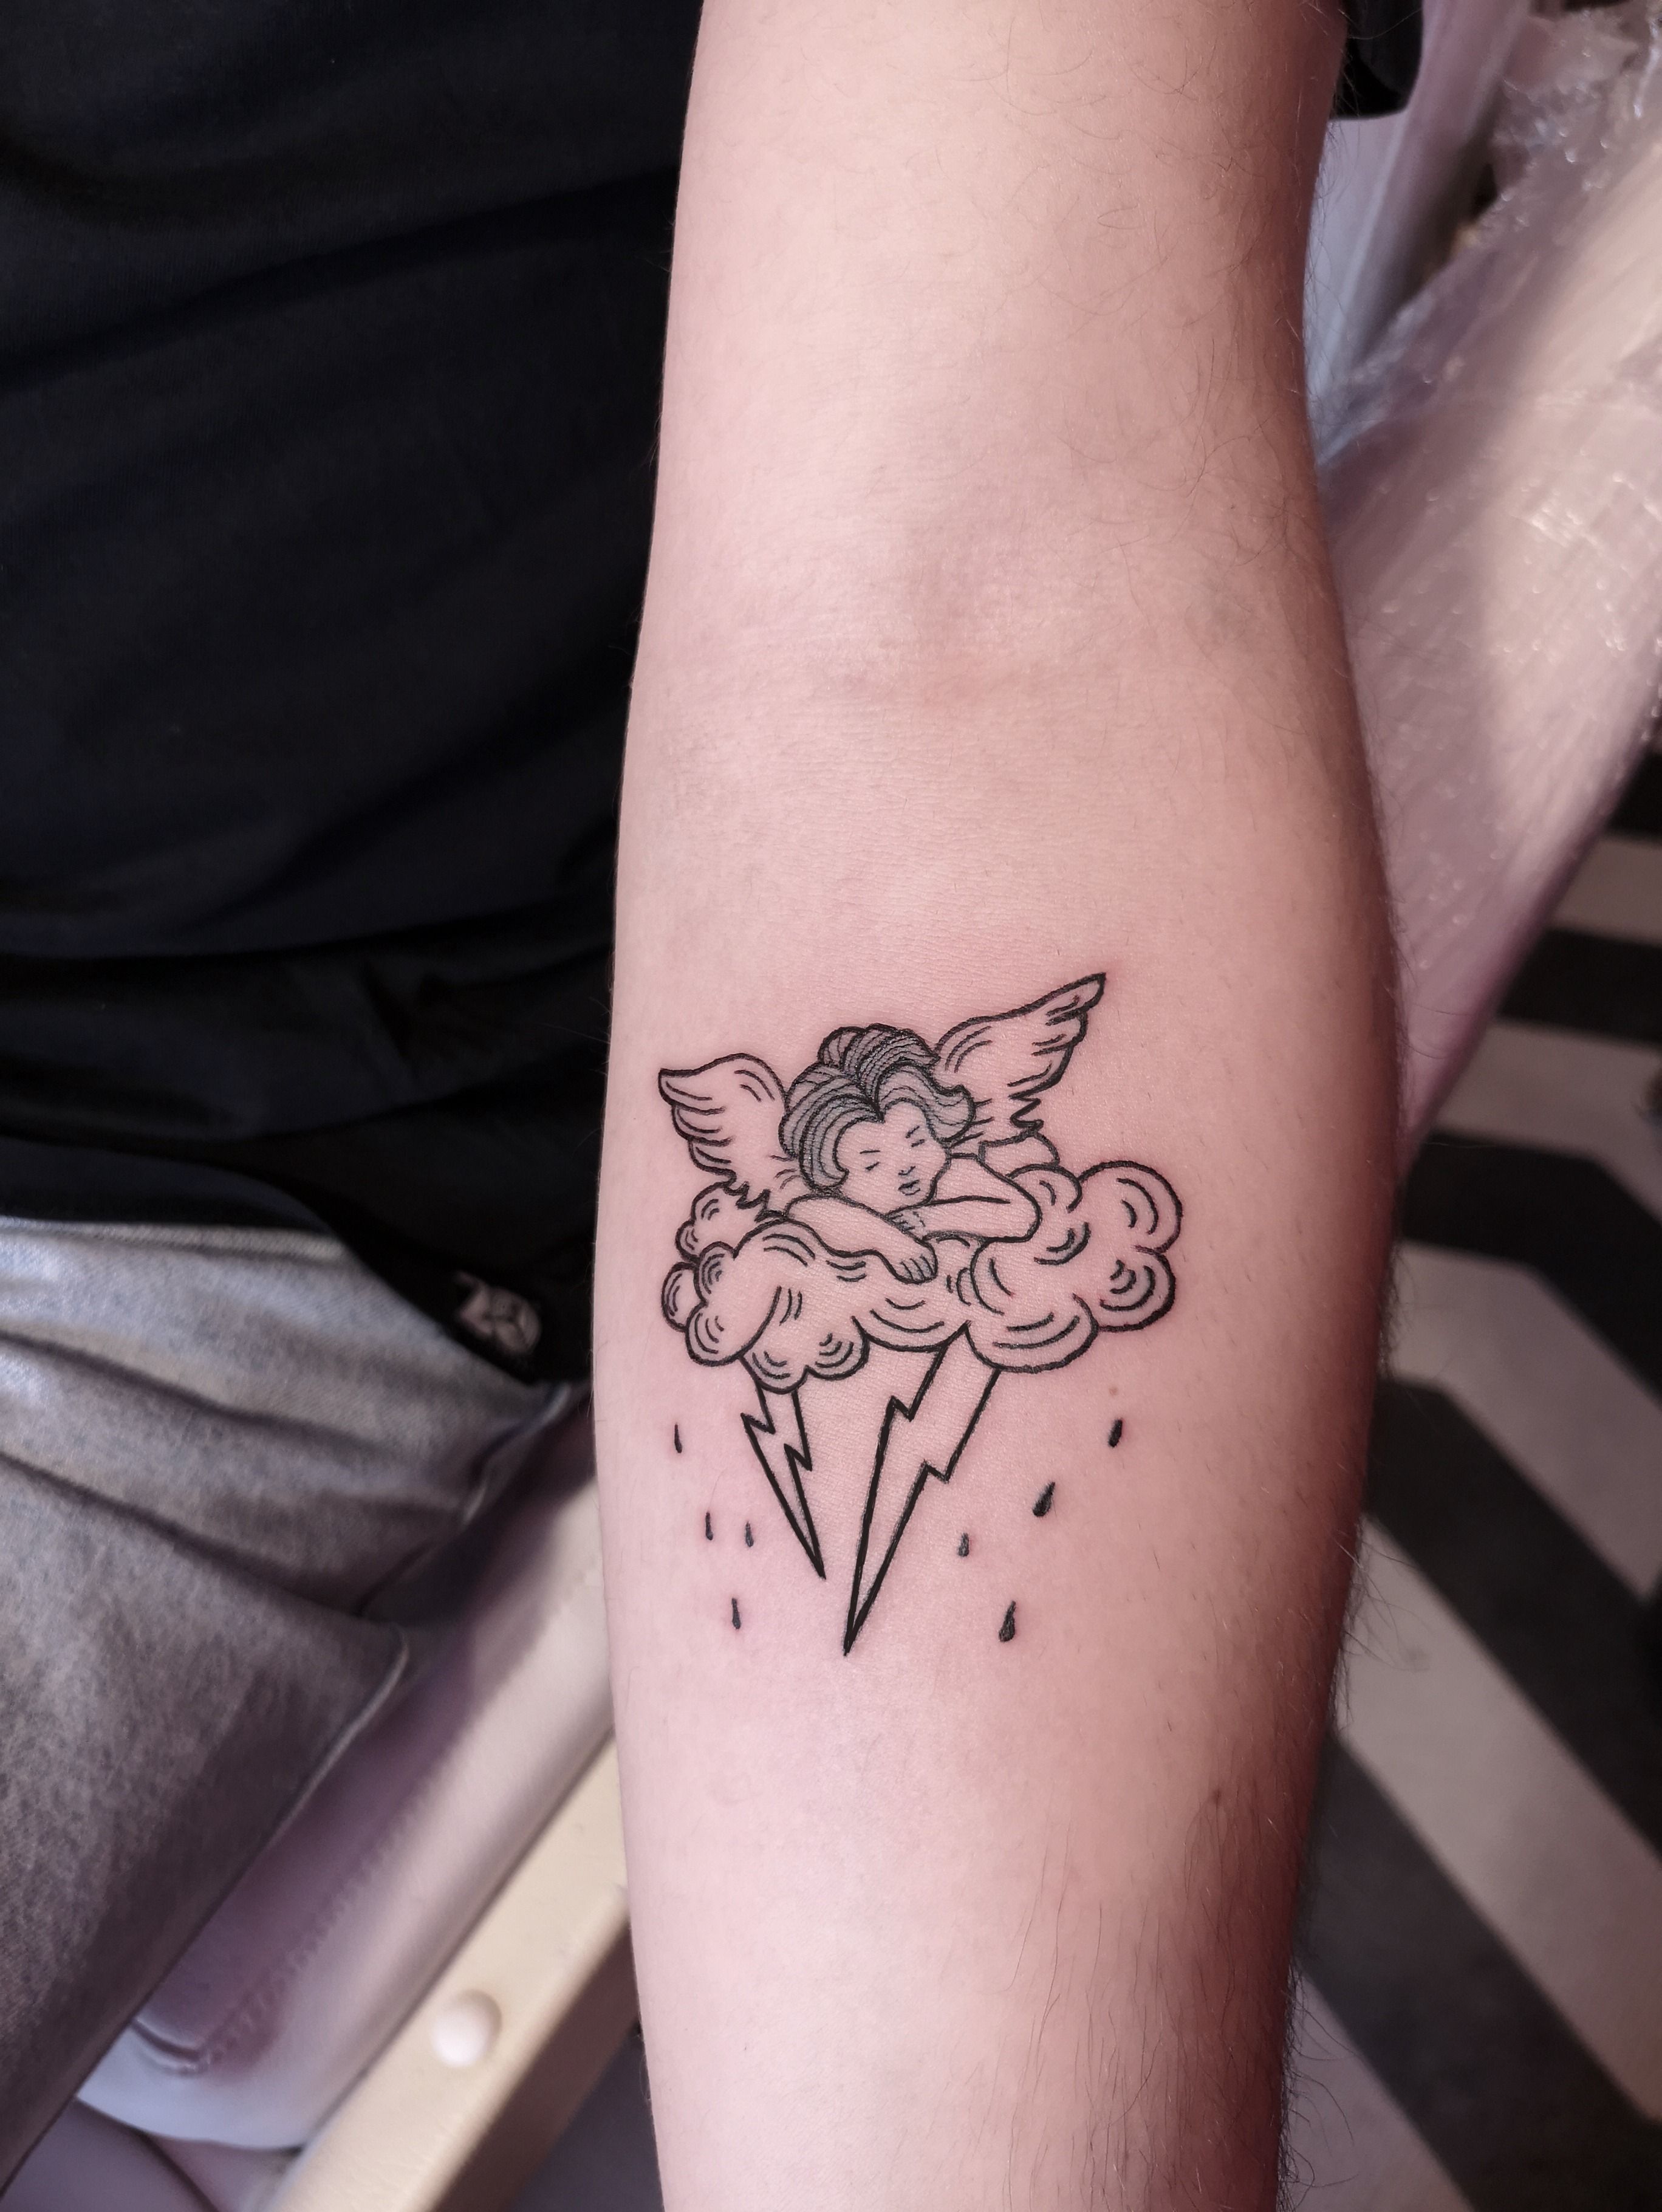 Baby Angel Tattoo-Tattoo Supply / Favvoseetattoos Nebula 2 : r/TattooDesigns